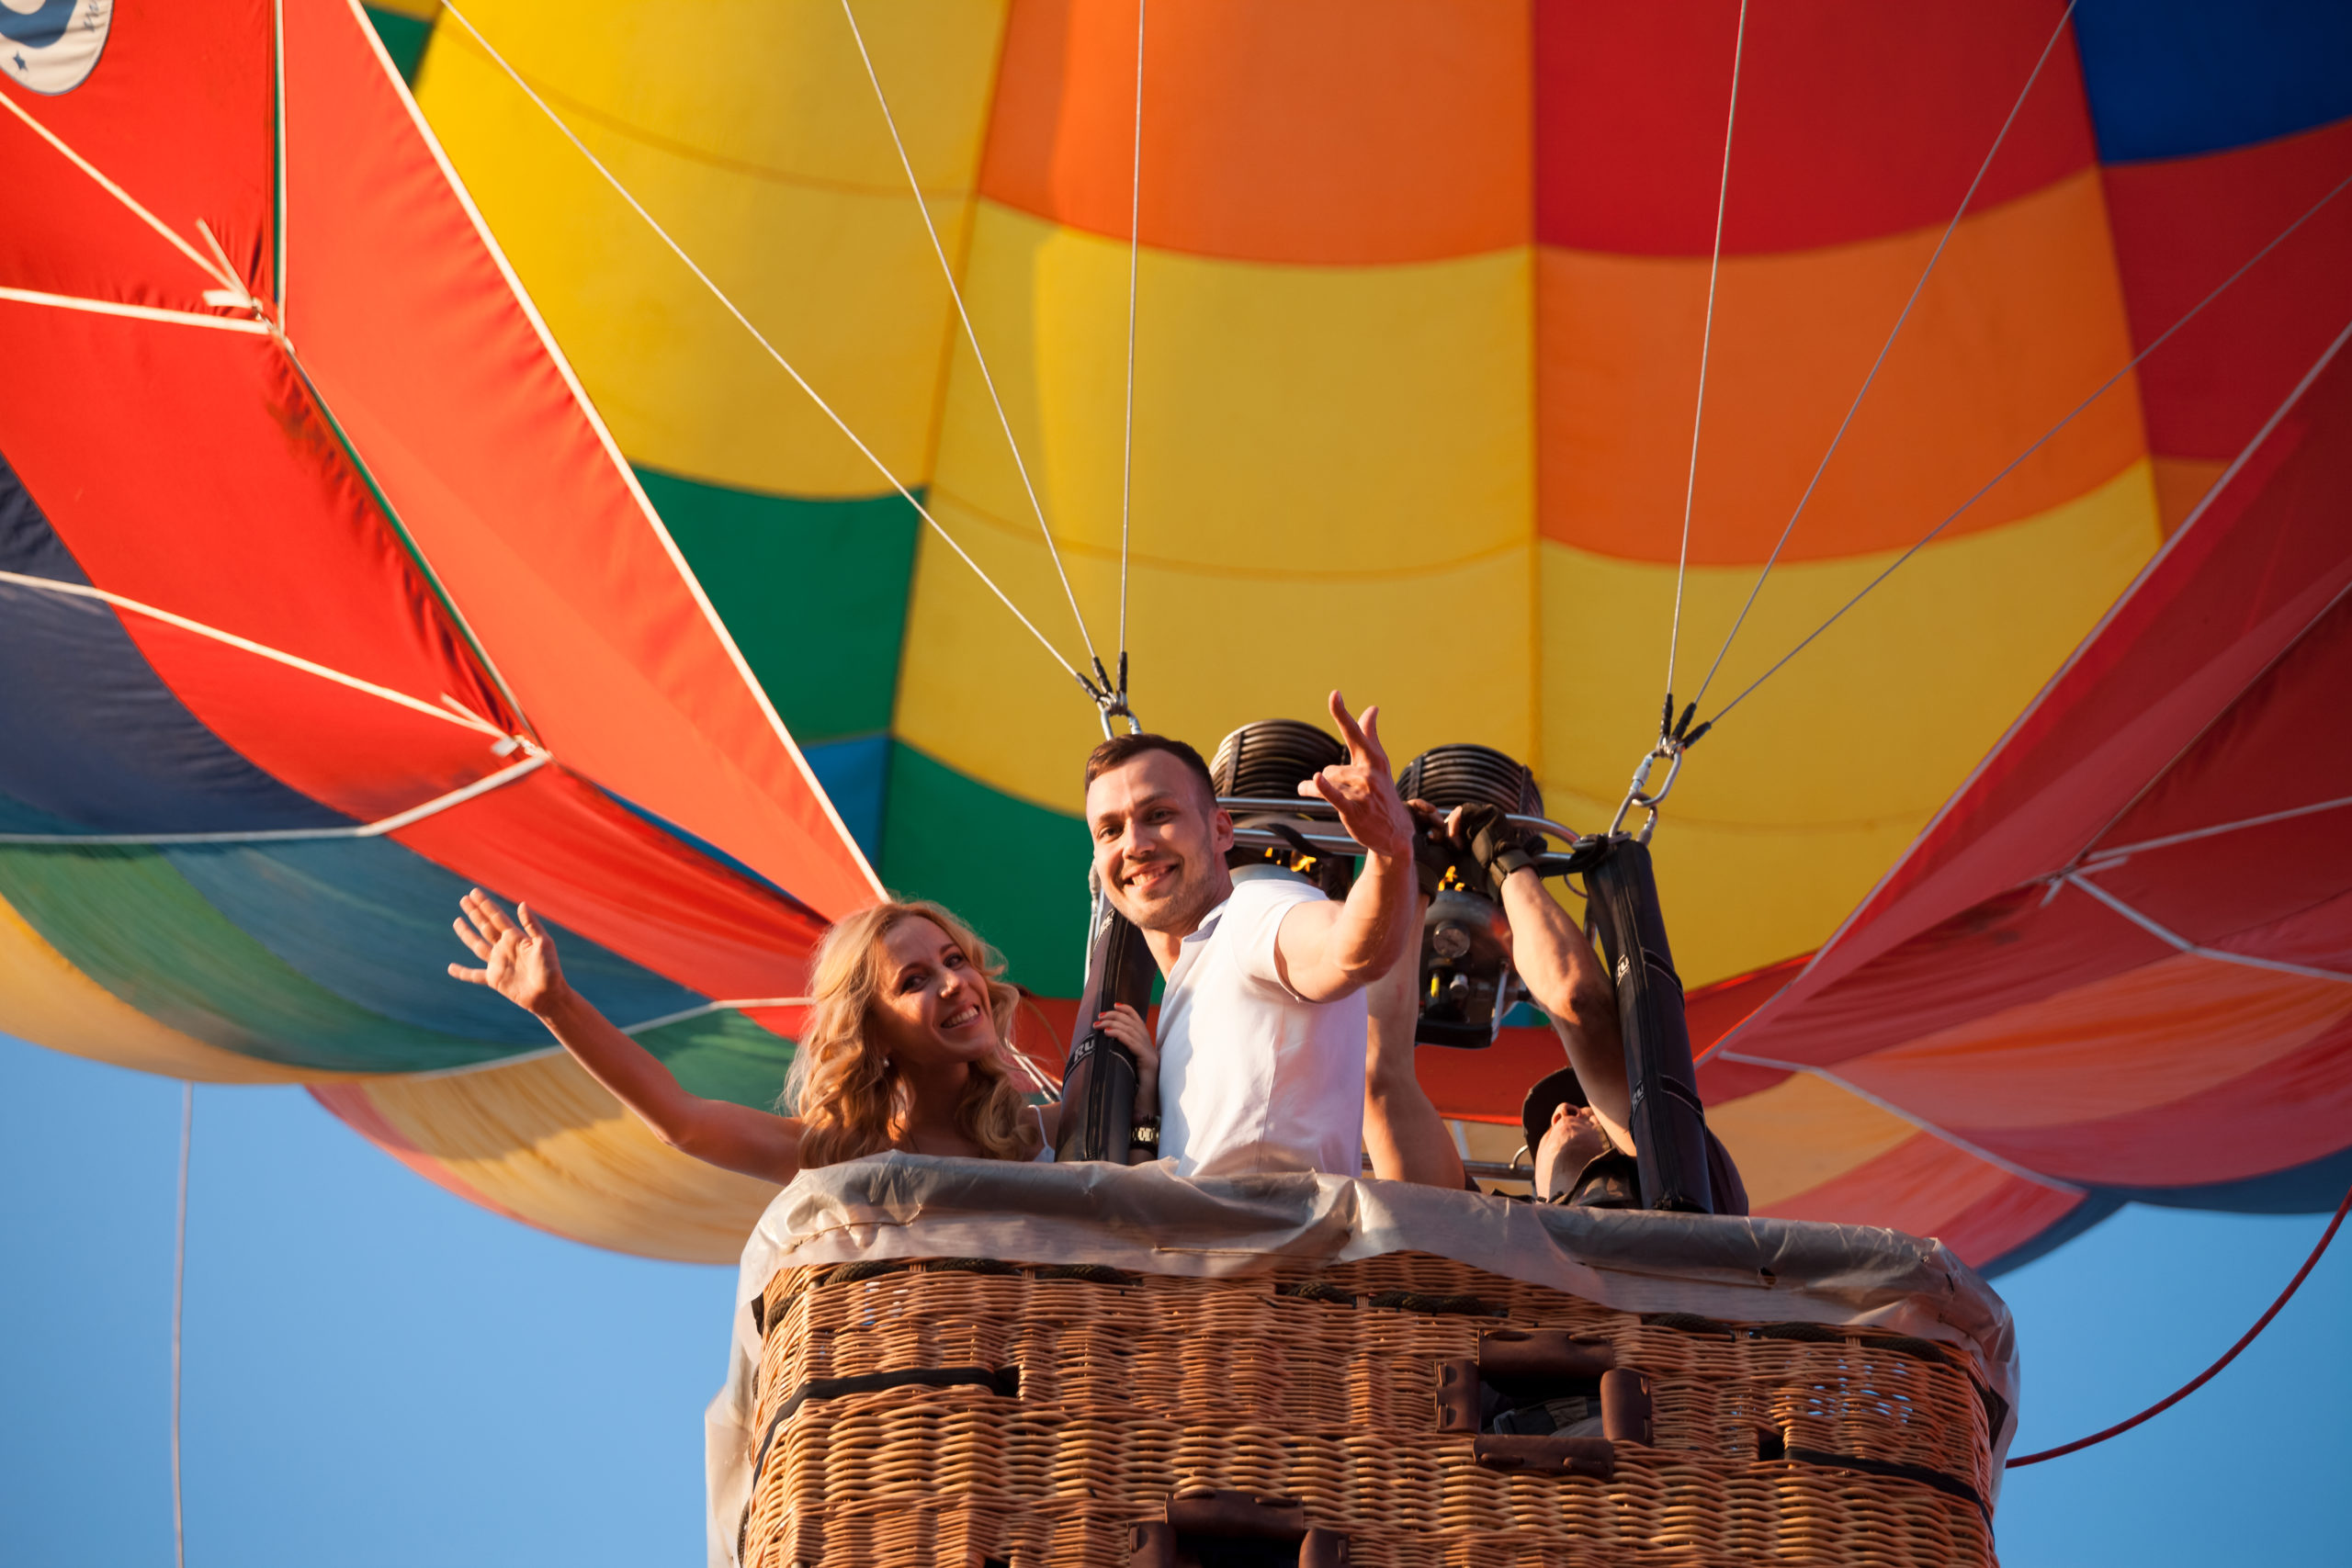 Полет на воздушном шаре – незабываемое развлечение для любителей острых ощущений и адреналина